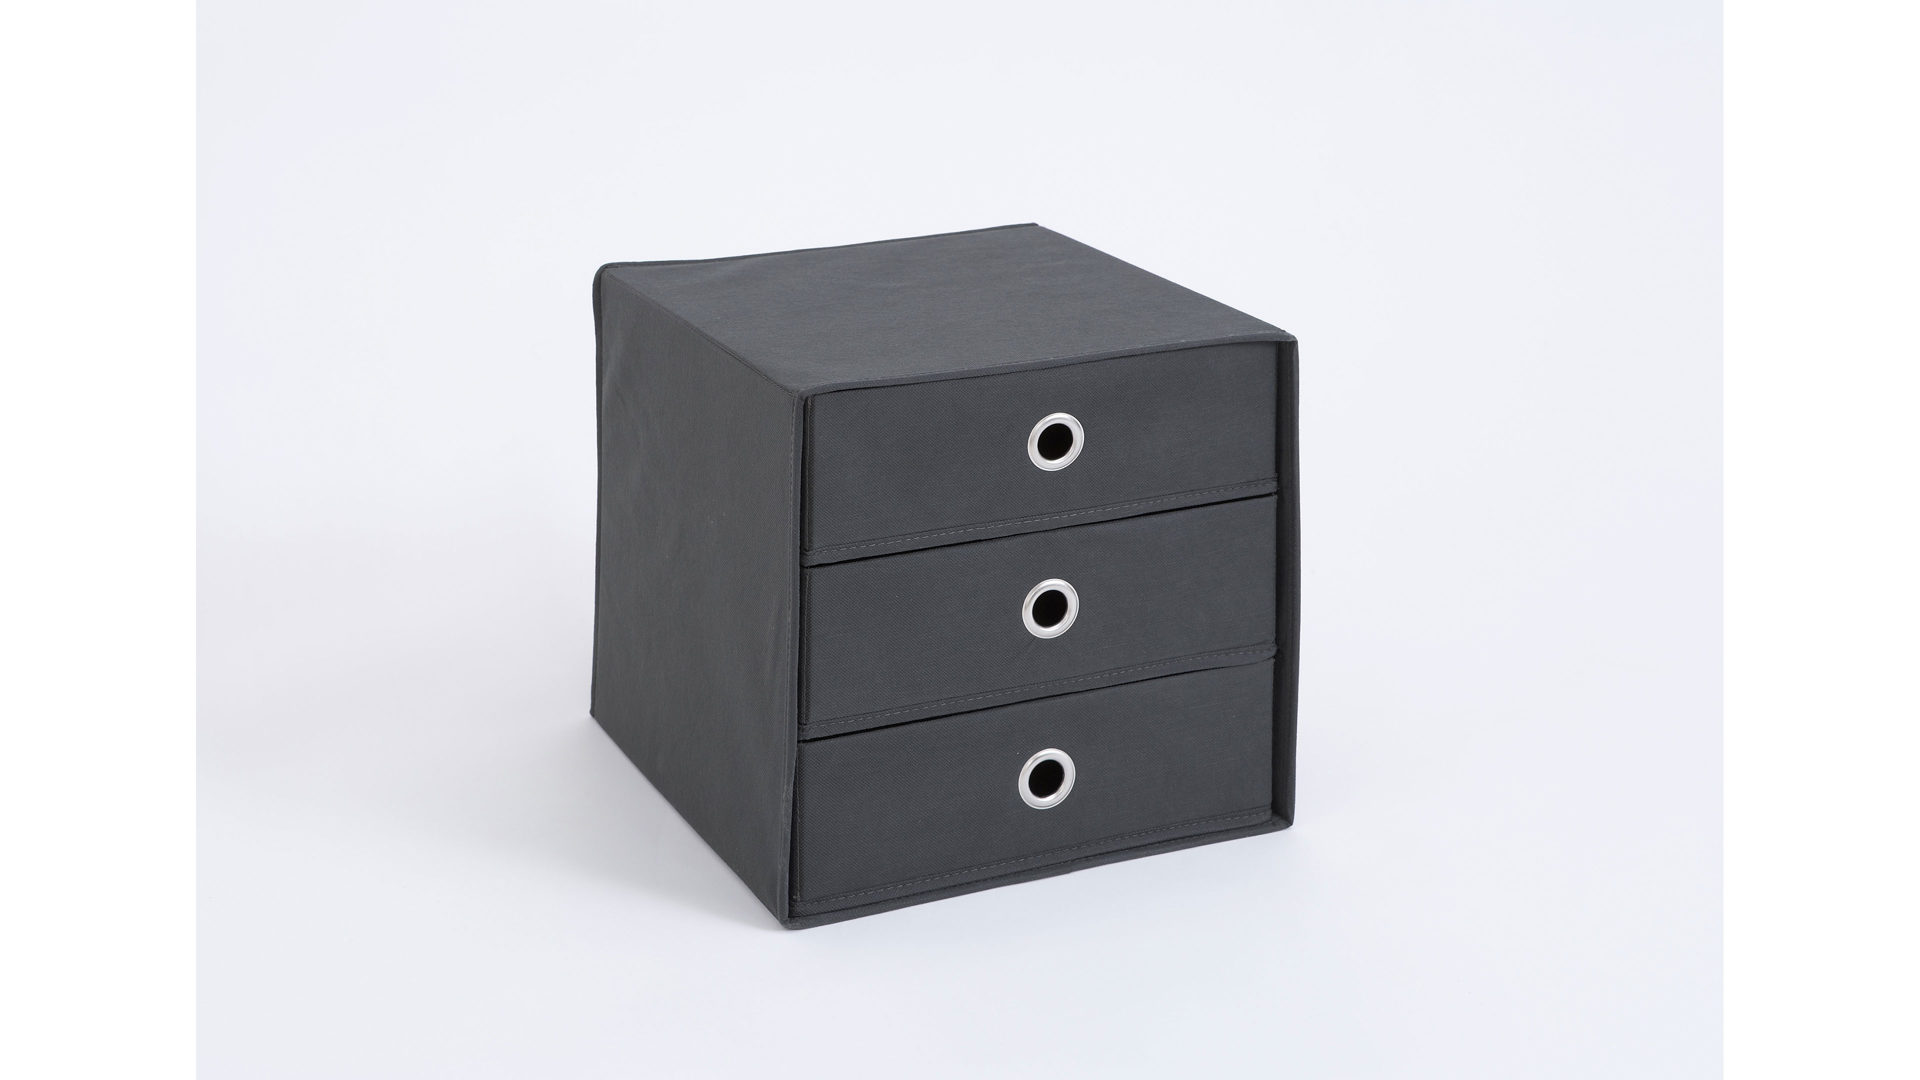 Faltbox Fmd furniture aus Stoff in Grau Faltbox mit drei Schubladen anthrazitfarbenes, verstärktes Vlies - drei Schubladen, ca. 32 x 32 cm